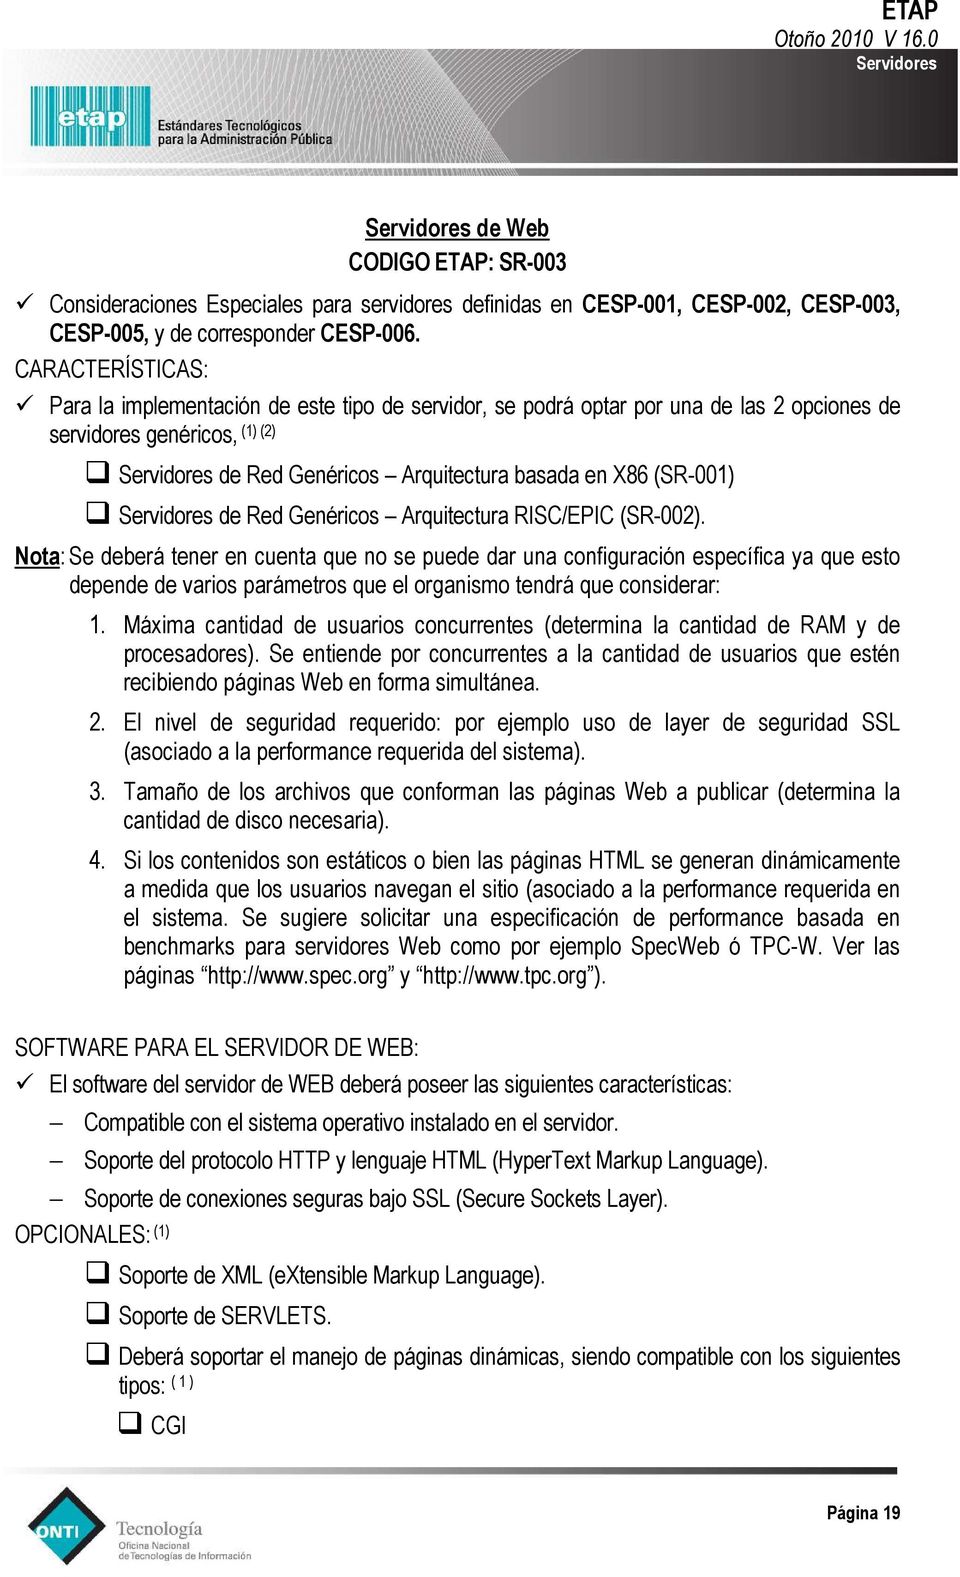 Genéricos Arquitectura RISC/EPIC (SR-002).